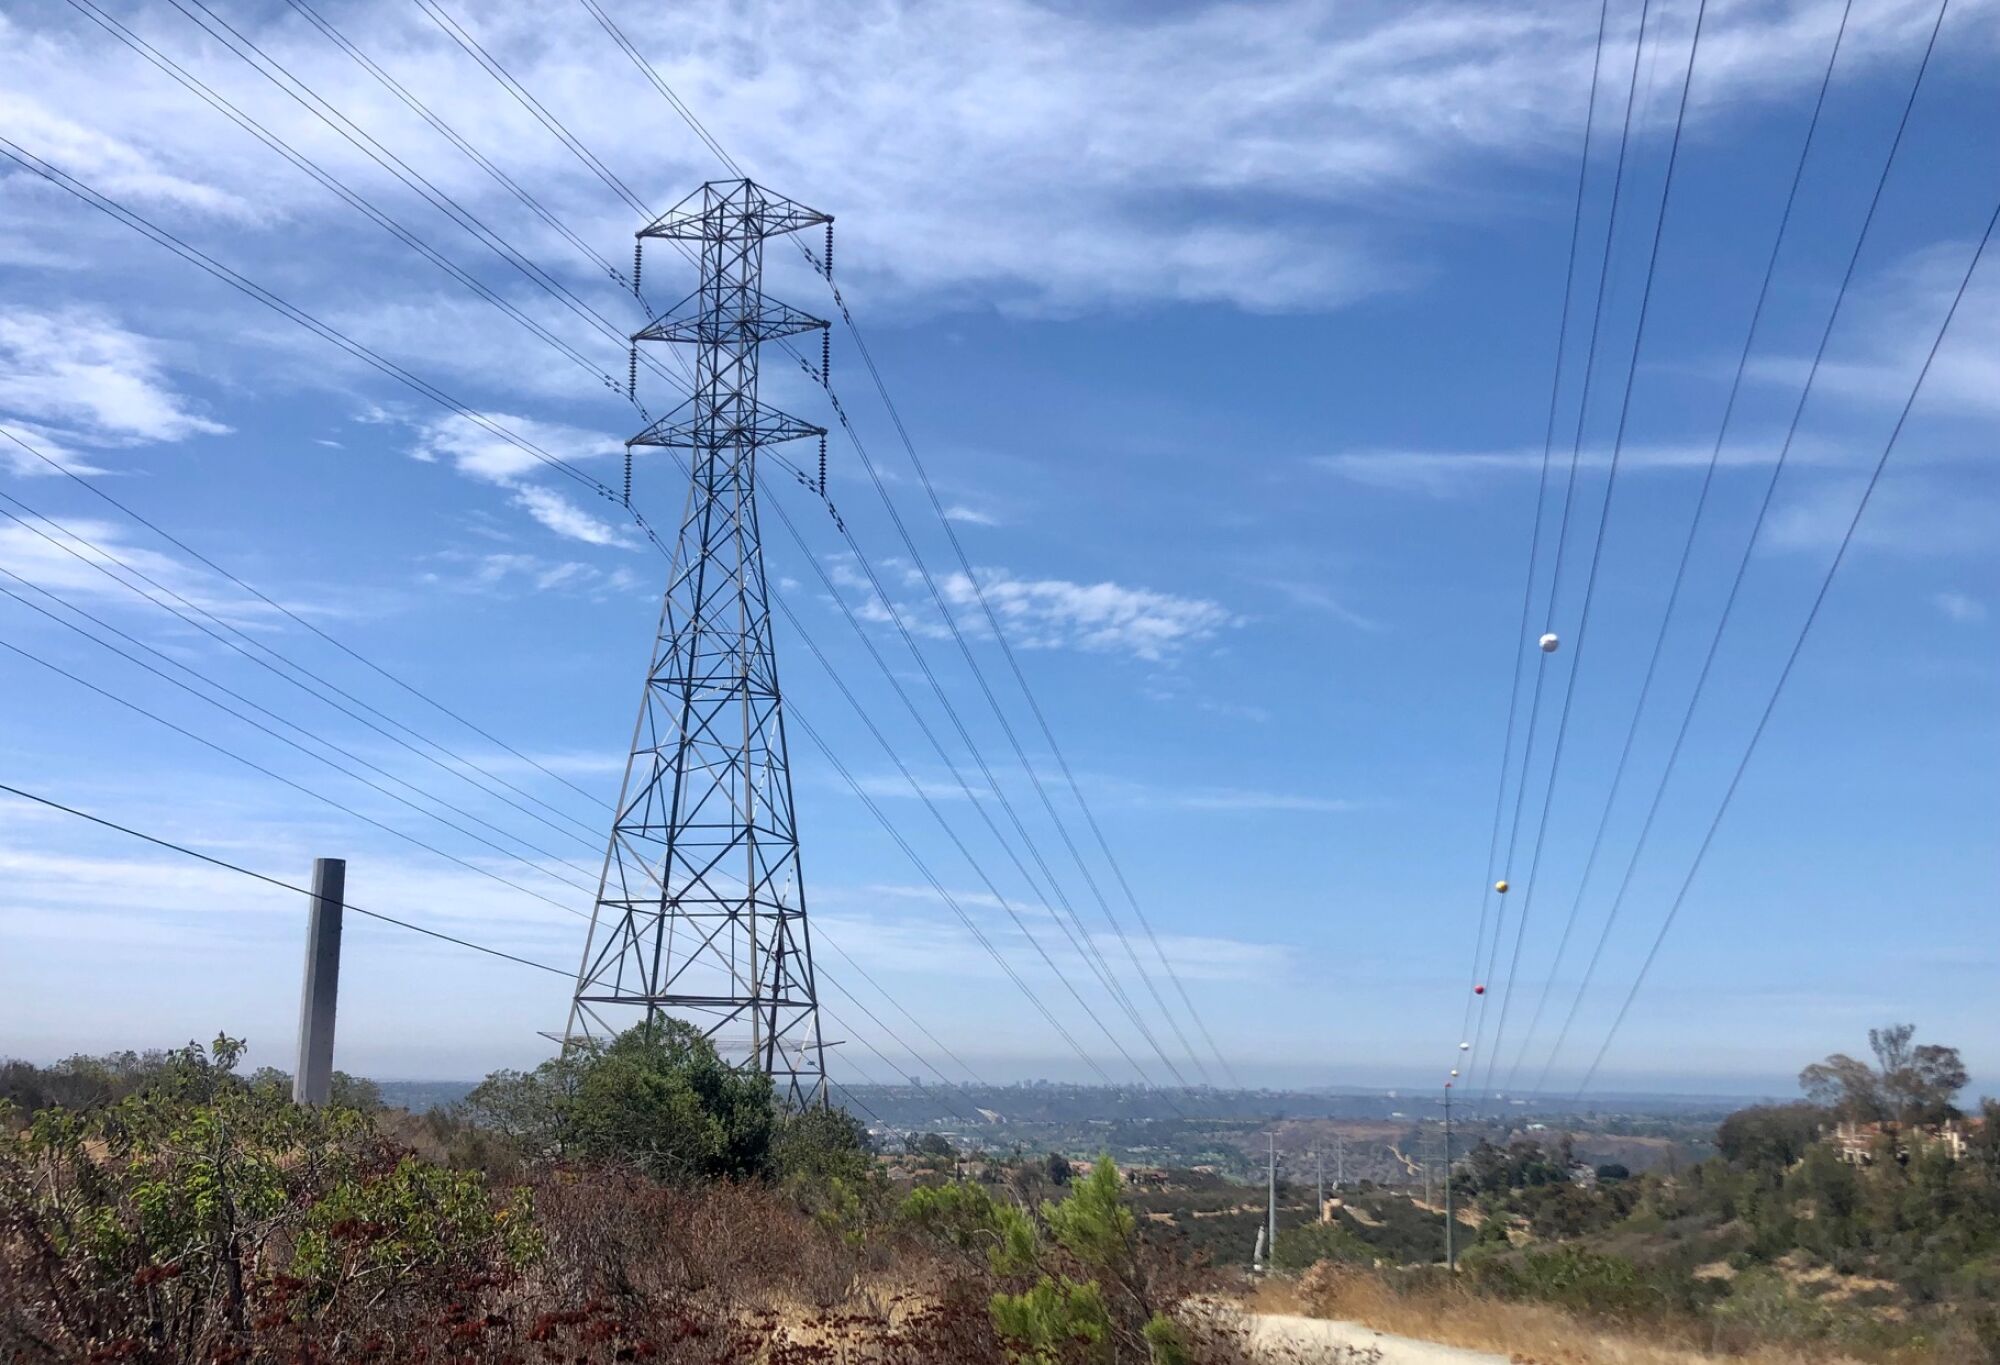 A San Diego Gas & Electric transmission tower in Tierrasanta.